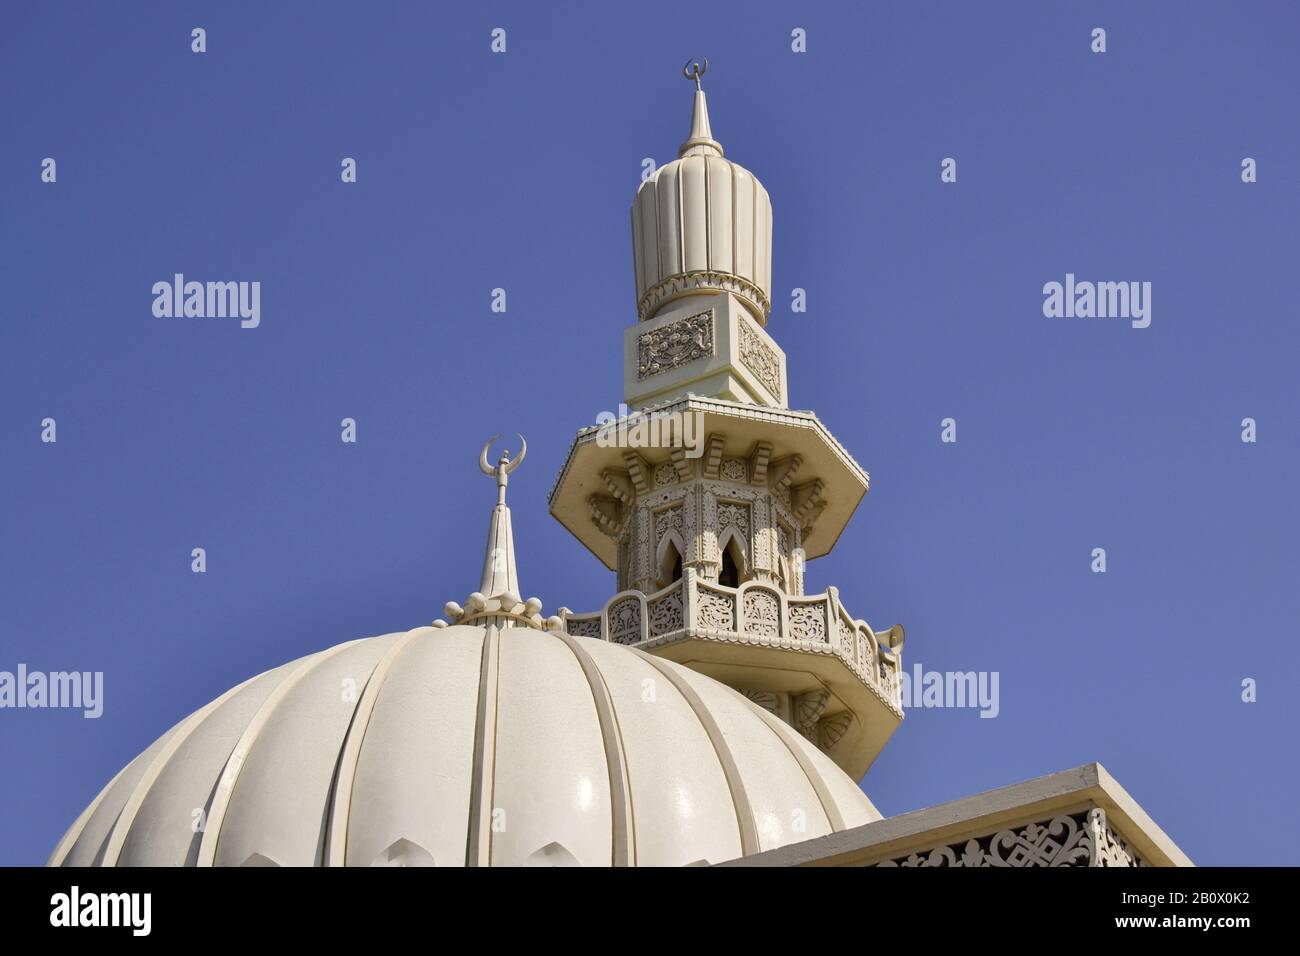 Minareto Di Una Moschea, Corniche Street, Emirati Arabi Uniti, Penisola Arabica, Medio Oriente, Foto Stock